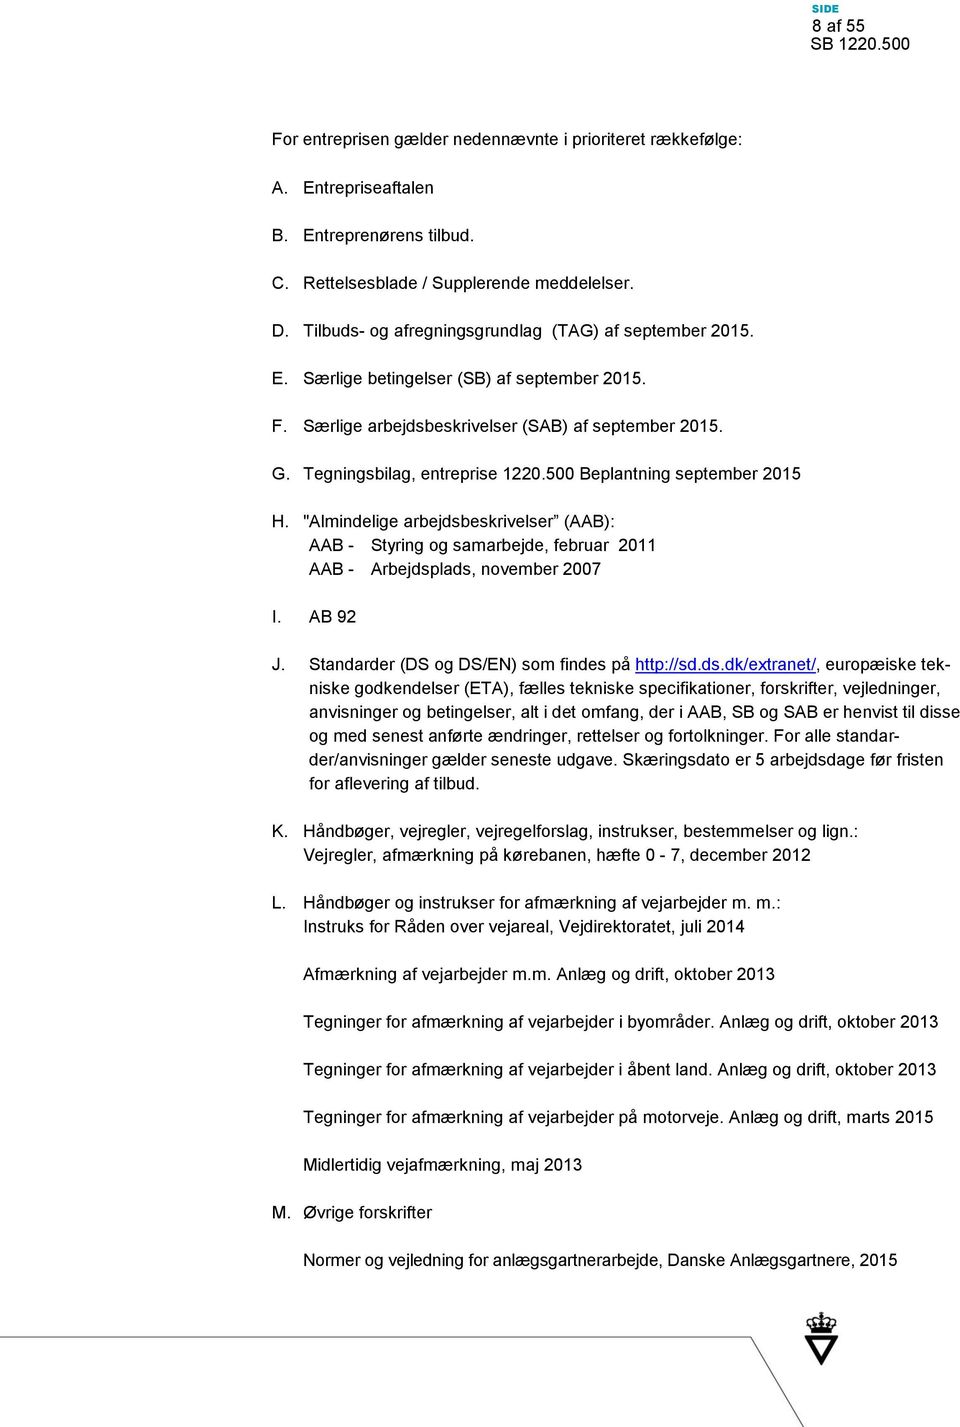 500 Beplantning september 2015 H. "Almindelige arbejdsbeskrivelser (AAB): AAB - Styring og samarbejde, februar 2011 AAB - Arbejdsplads, november 2007 I. AB 92 J.